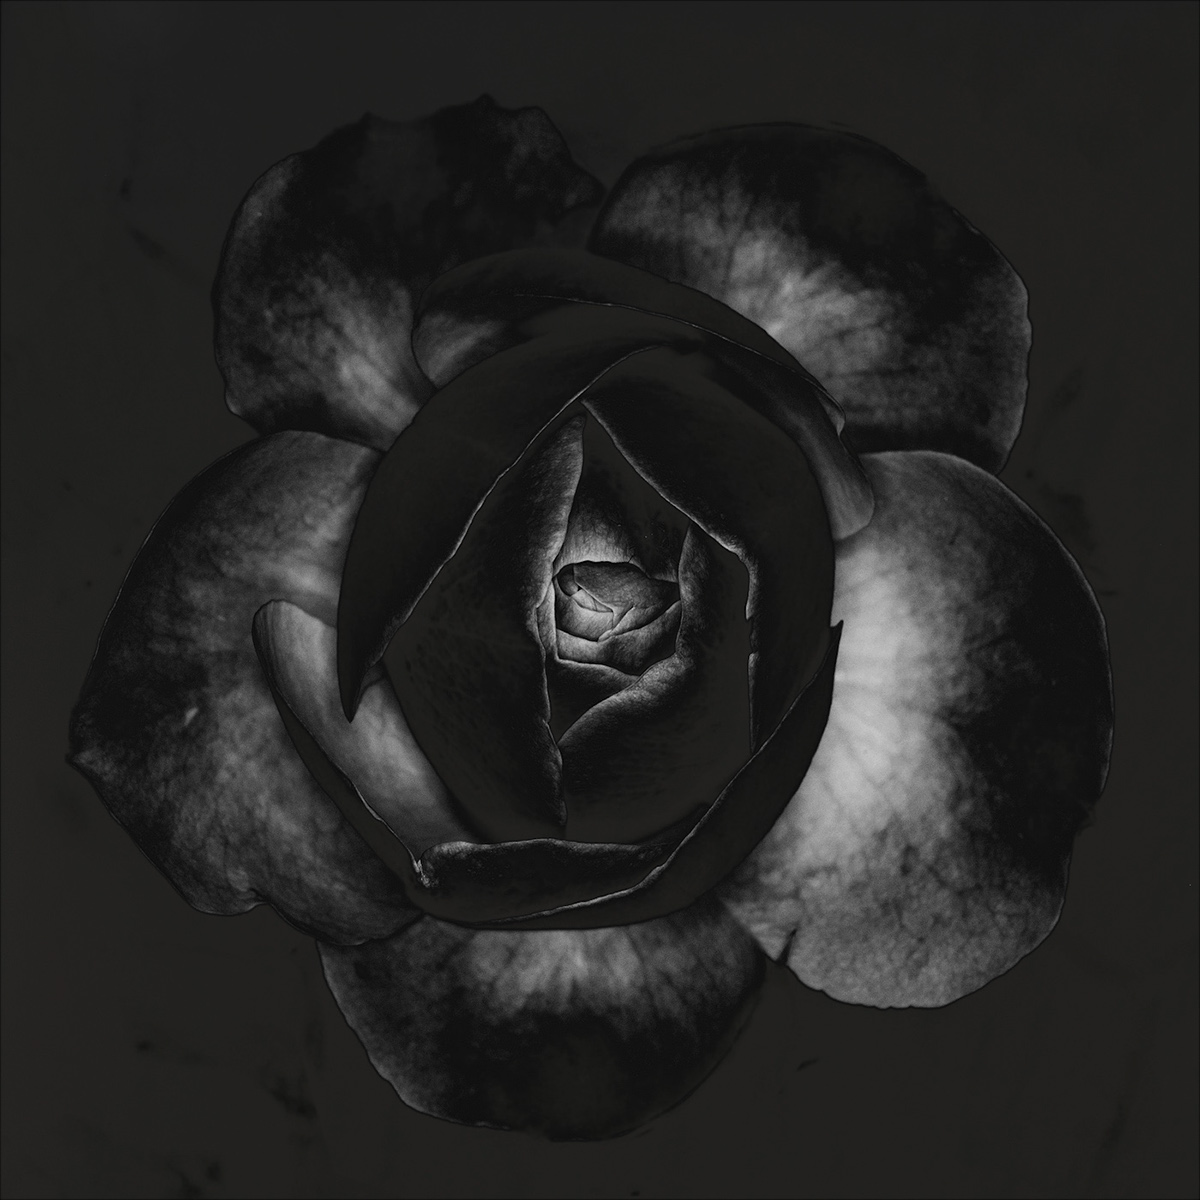 rose perfume Fragrance folds flower bloom Black&white square